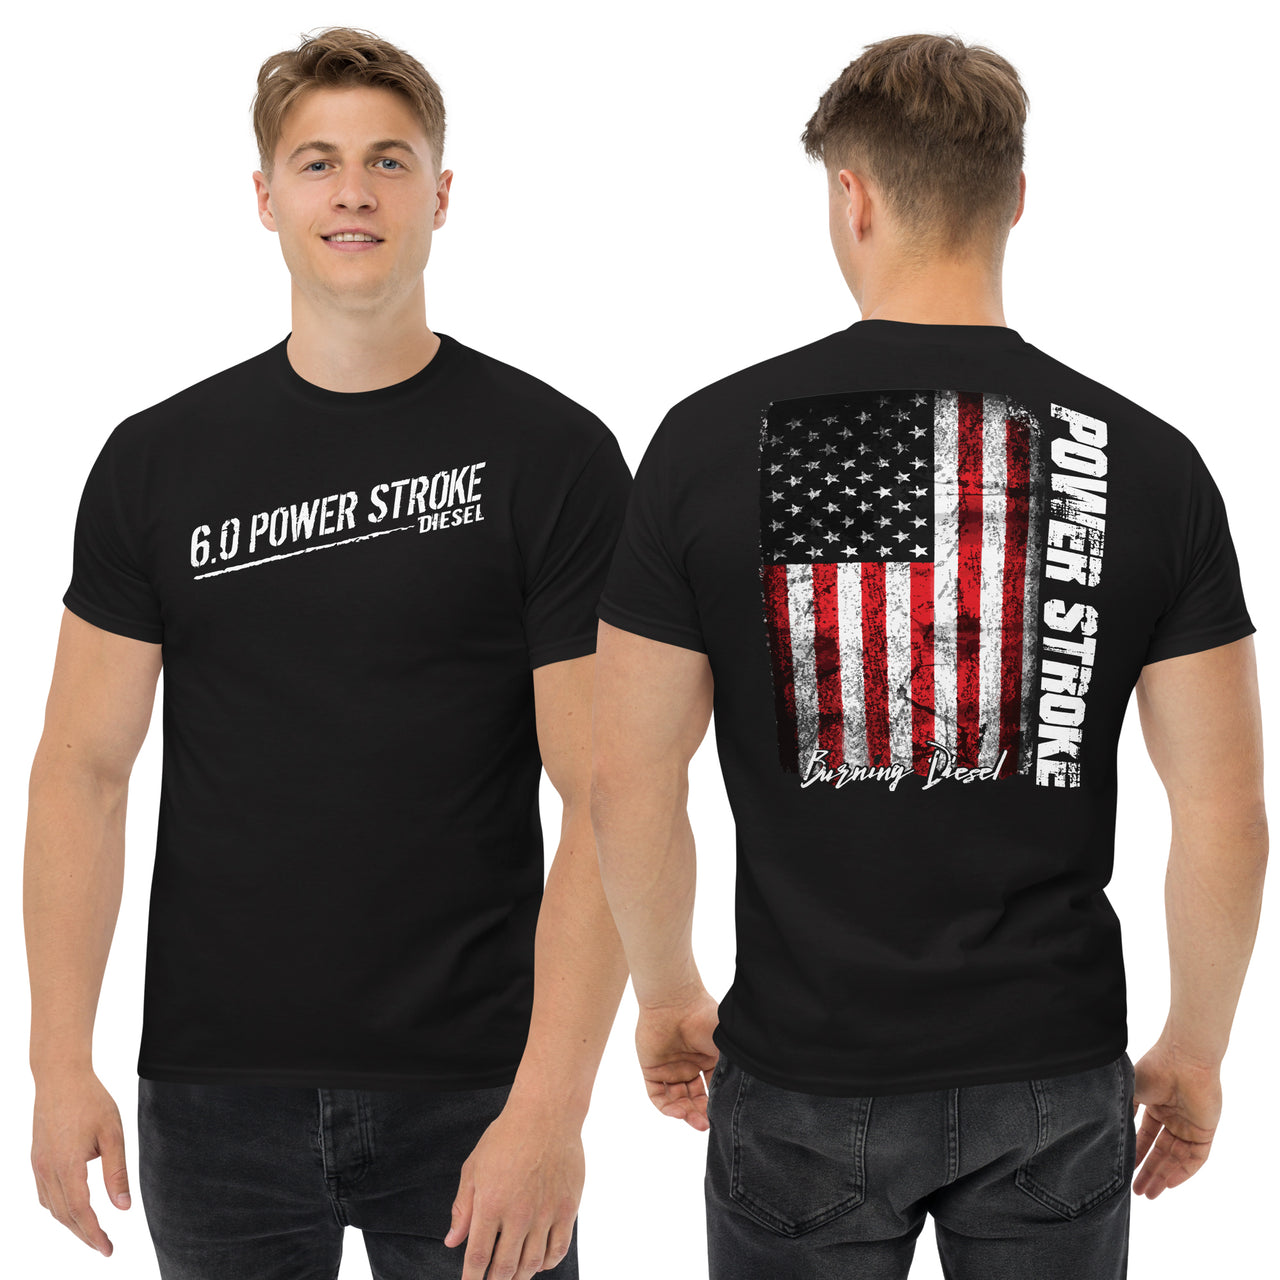 6.0 Powerstroke American Flag T-Shirt modeled in black